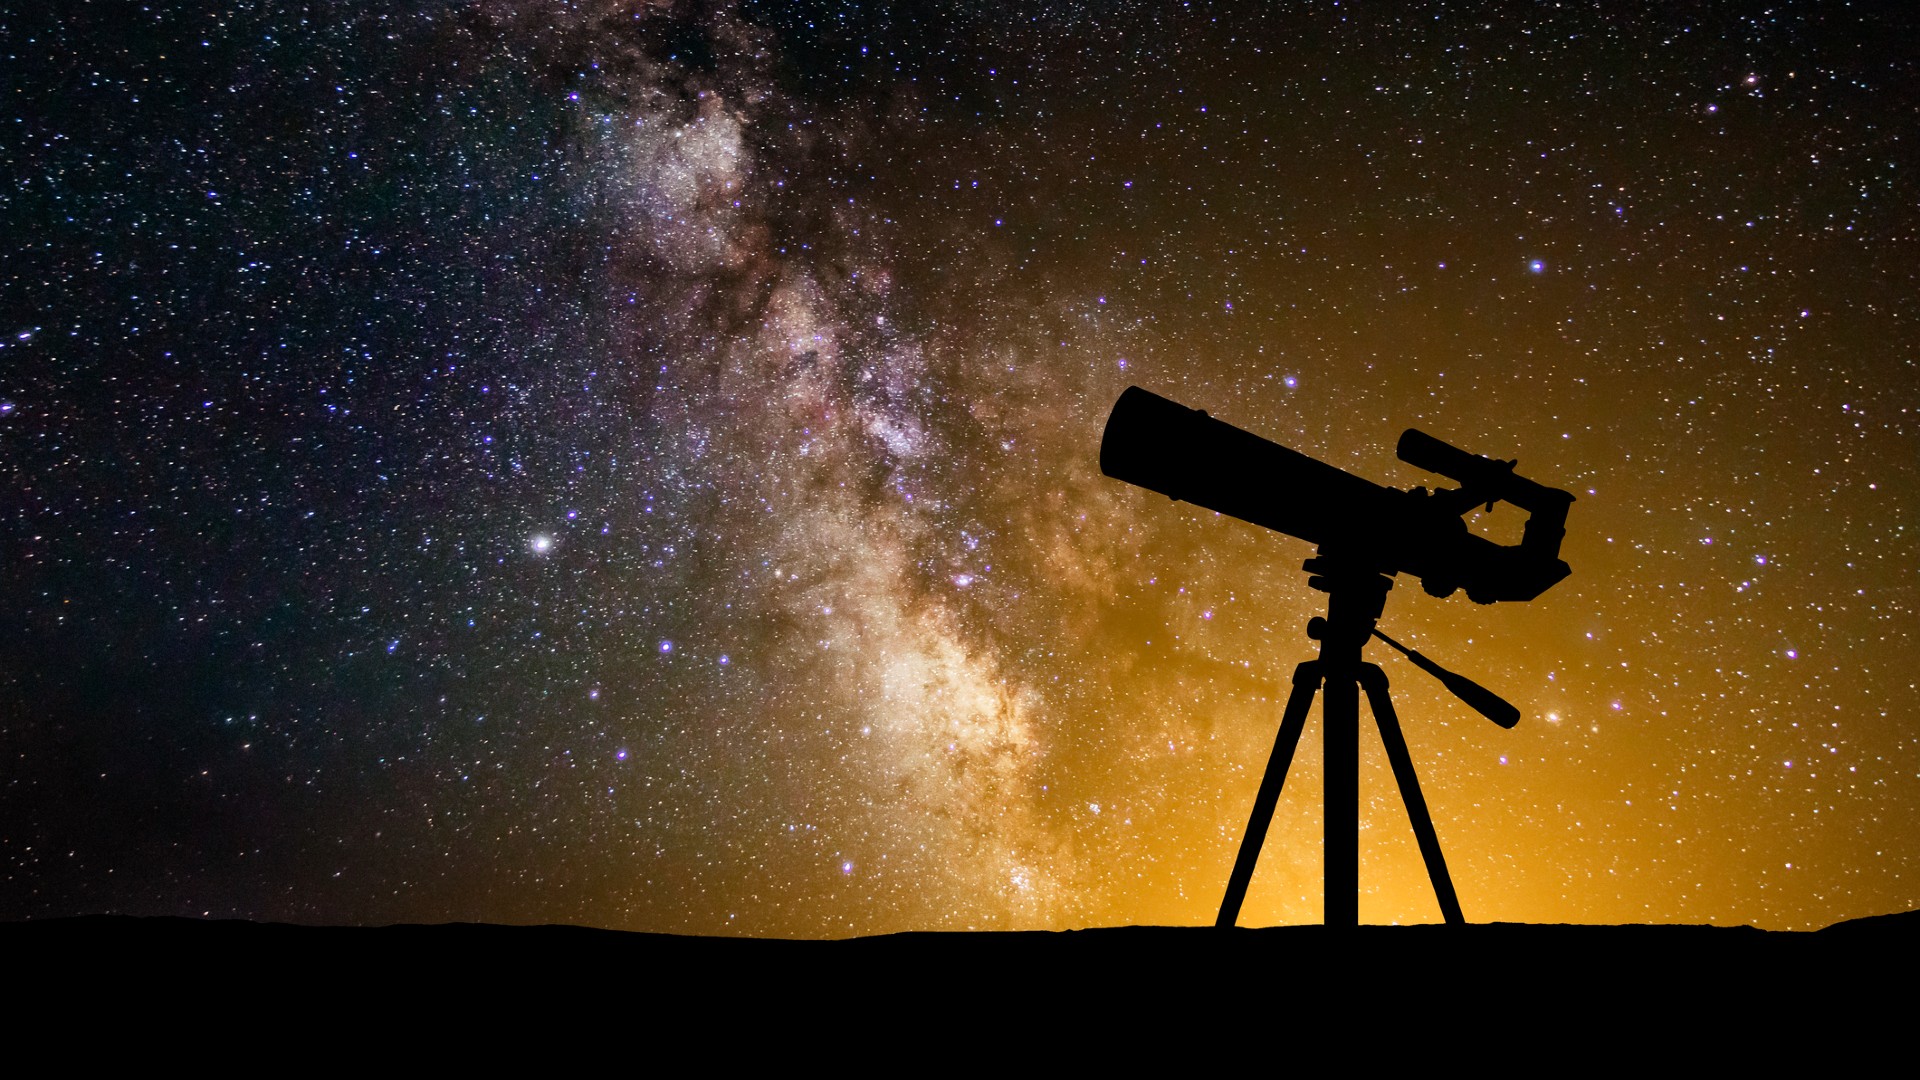 Tìm hiểu về các hành tinh sáng rực trong hệ mặt trời và vũ trụ bao la. Những bức ảnh đẹp không thể chối từ sẽ đưa bạn đến những khoảng không trải nghiệm tuyệt vời. Vật lý học nổi tiếng Neil deGrasse Tyson sẽ giải thích cho bạn cách khoa học giải thích những hành tinh này.